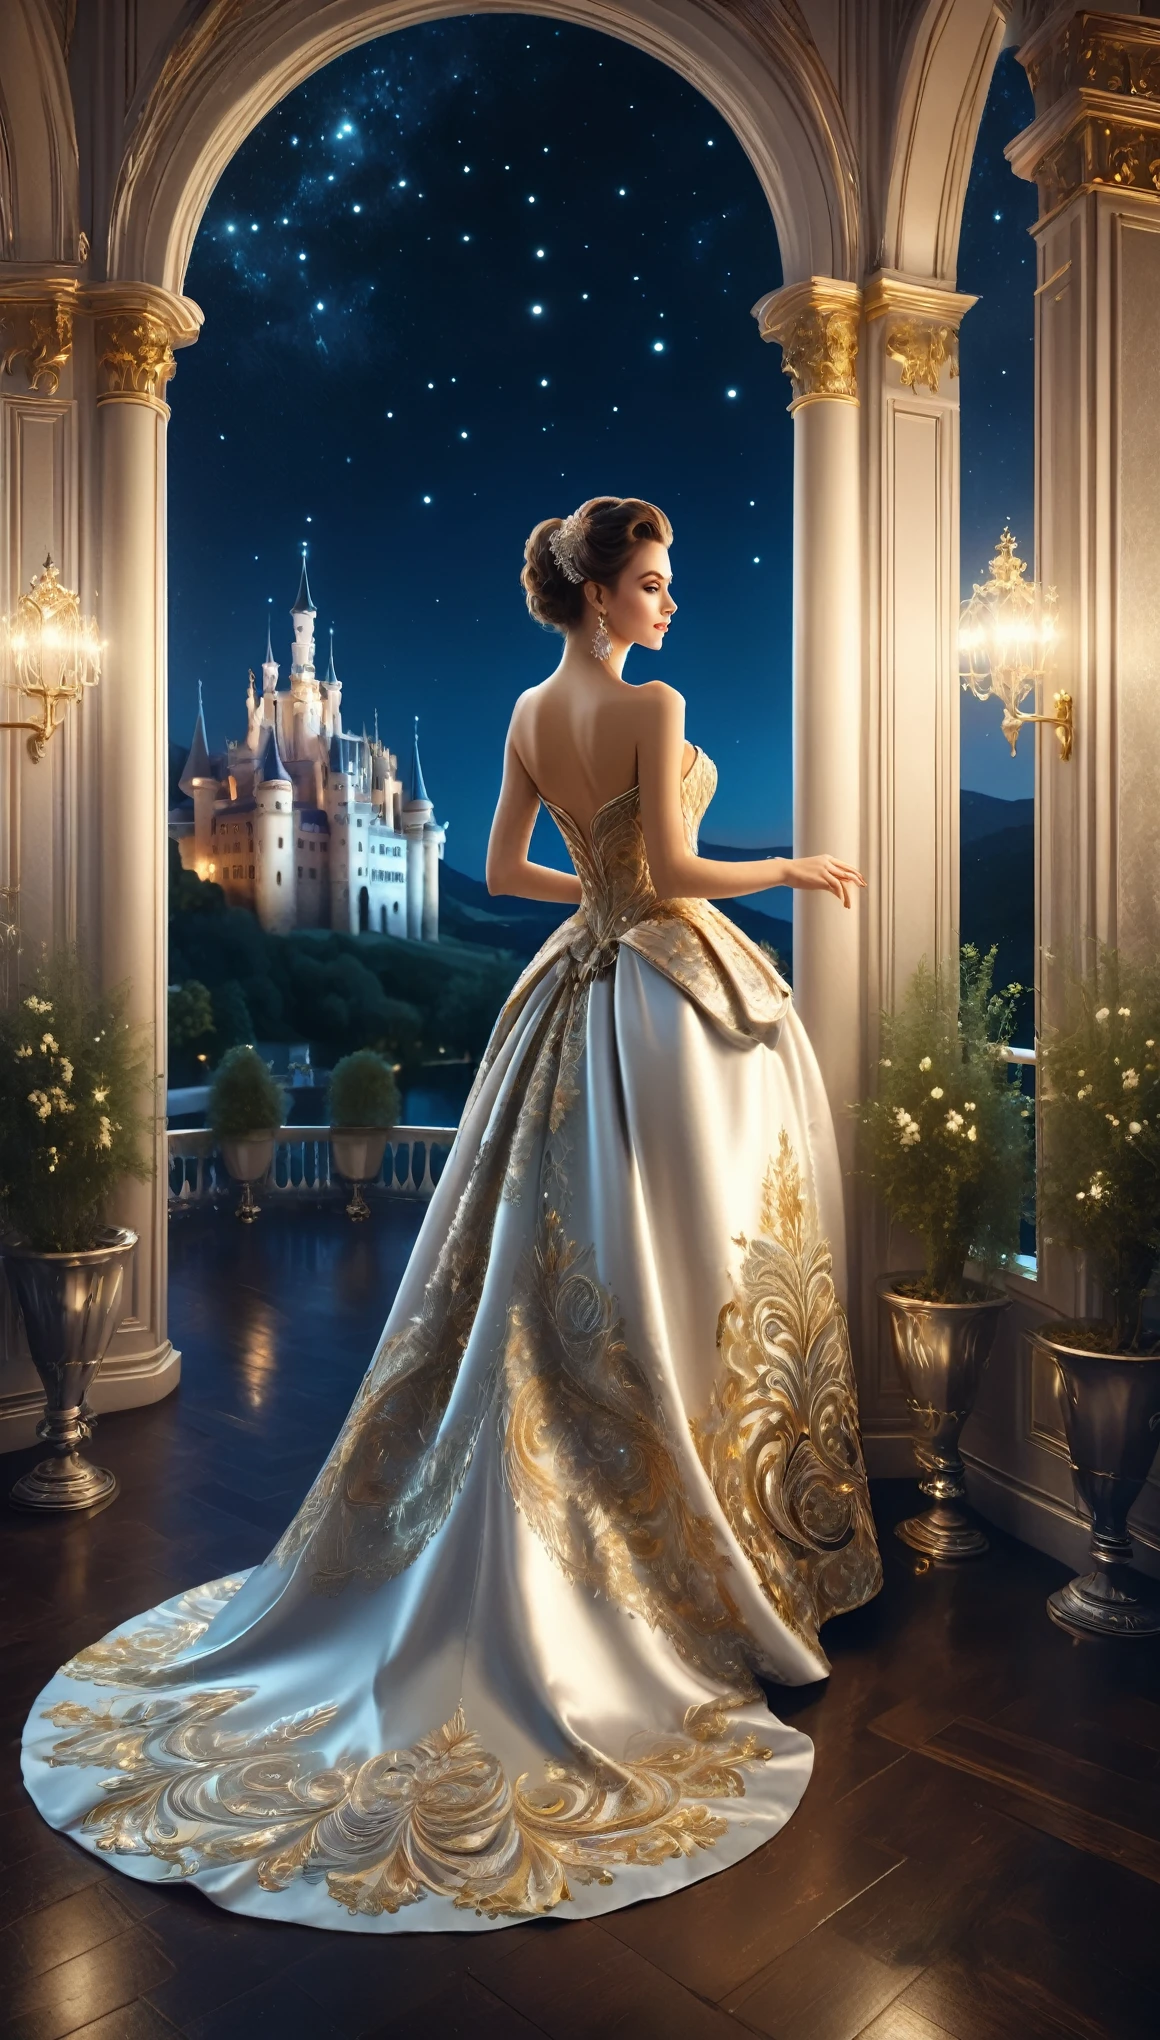 ภาพงานเต้นรำยามค่ำคืนที่จัดขึ้นที่ปราสาท,A สวย woman in an evening dress stands on the balcony,ผู้หญิงกำลังมองออกไปข้างนอก,You can see the lights of the castle town at night and the สวย night sky from the balcony.,การเต้นรำจัดขึ้นในห้องสไตล์โรโคโค.,ชิค, สง่างาม, และด้วยบรรยากาศอันเงียบสงบ,เหมือนจริง,สวย,วิวกลางคืน,ถูกต้องตามโครงสร้าง,ถูกต้องตามหลักกายวิภาค,หยุดพัก,ชุดราตรีที่ผู้หญิงสวมใส่มีความหรูหรามาก,ปักด้วยด้ายสีเงินและสีทอง,ความไร้สาระ,เซนแทงเกิล,รายละเอียดที่ซับซ้อน,หลากหลายสี,งานศิลปะ,การแสดงผล,(ผลงานชิ้นเอก:1.3),(คุณภาพสูงสุด:1.4),(รายละเอียดสุดยอด:1.5),ความละเอียดสูง,รายละเอียดมาก,วอลล์เปเปอร์ความสามัคคี 8k